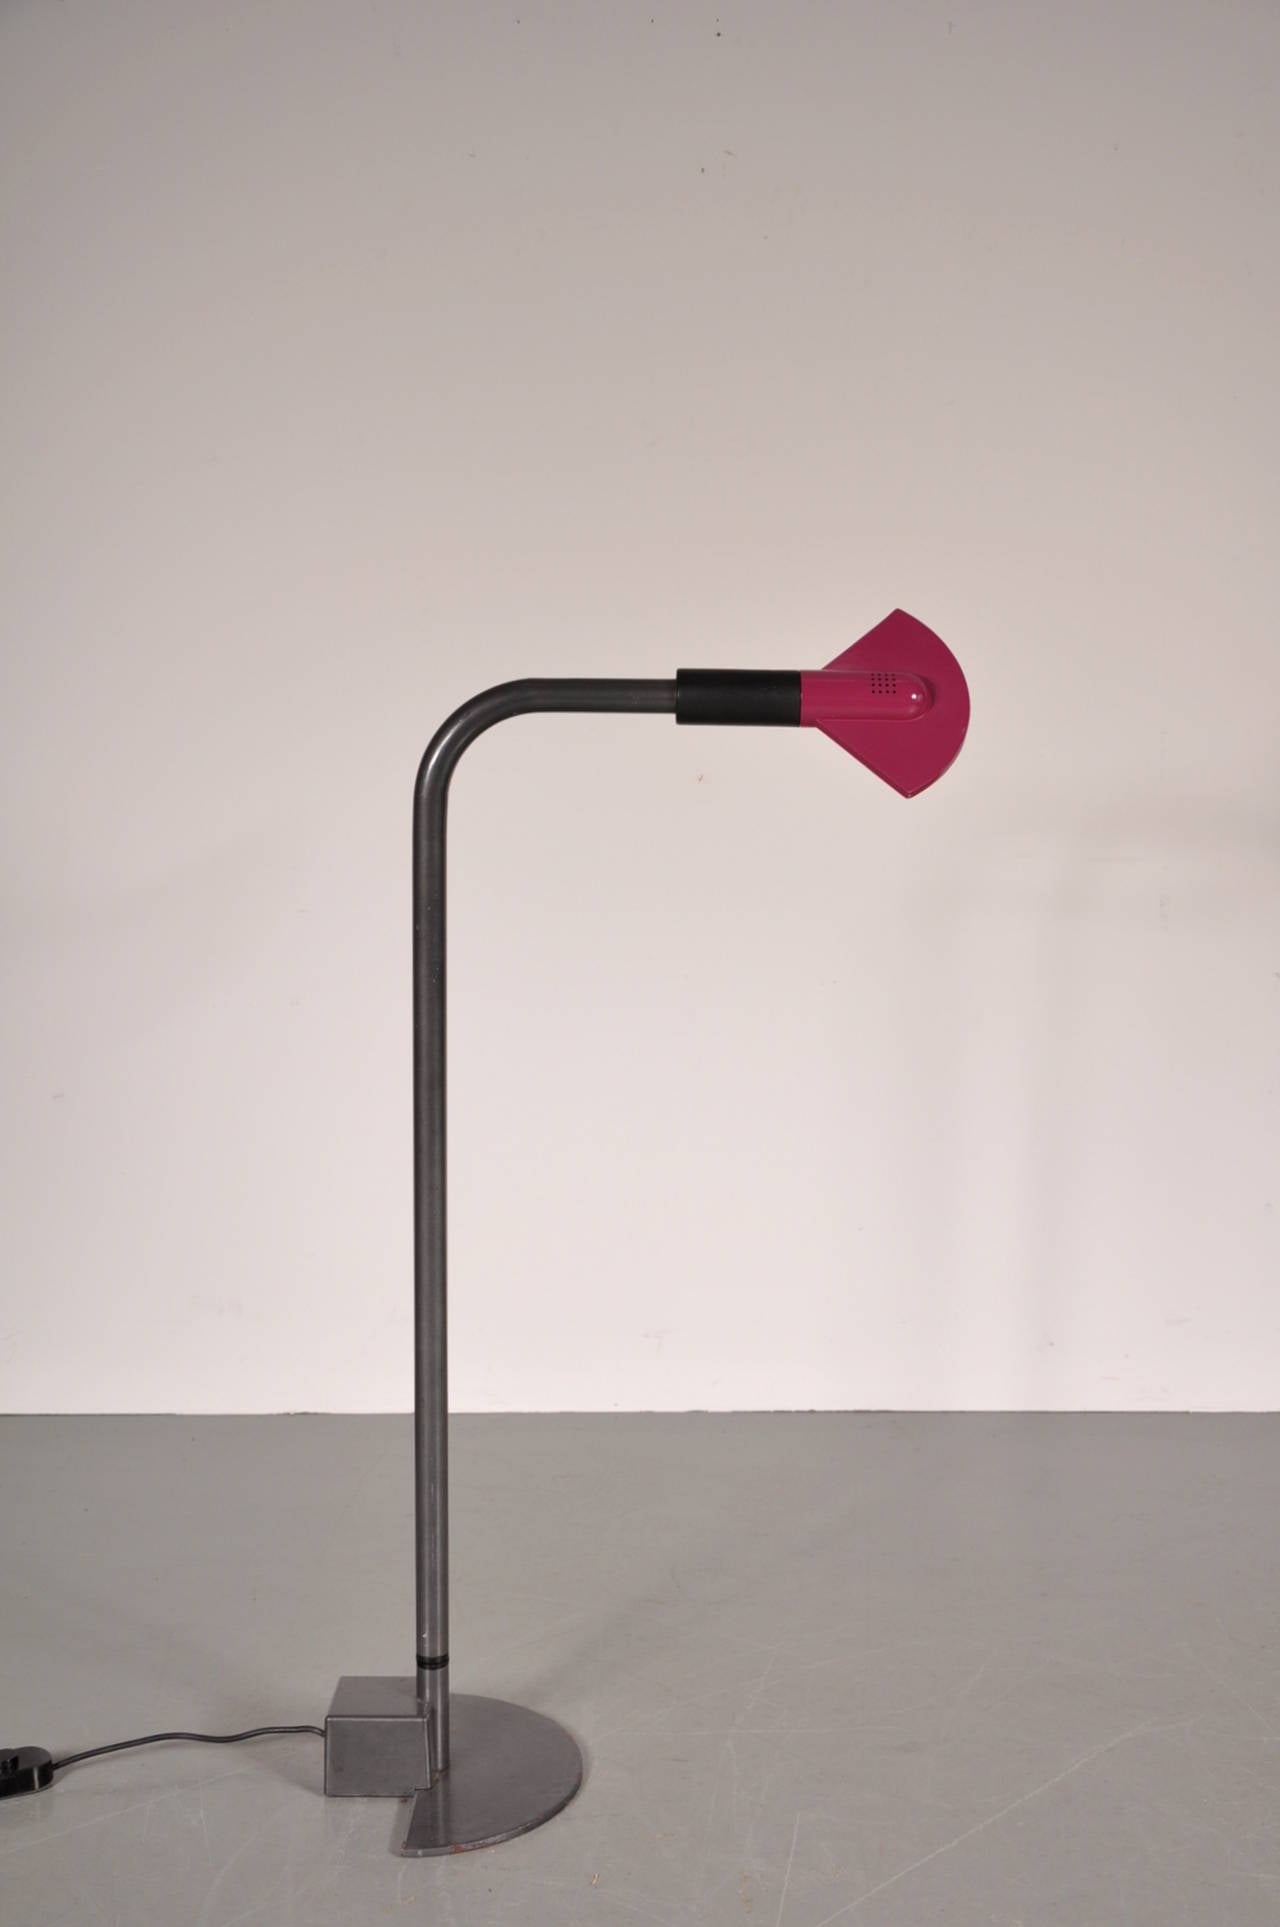 Rare lampadaire réglable de style Memphis par Hans von Klier, fabriqué par Bilumen, Italie, vers 1980.

La lampe est dotée d'une base en métal de haute qualité dont la hauteur est facilement réglable jusqu'à 140 cm. Le capot en aluminium violet a